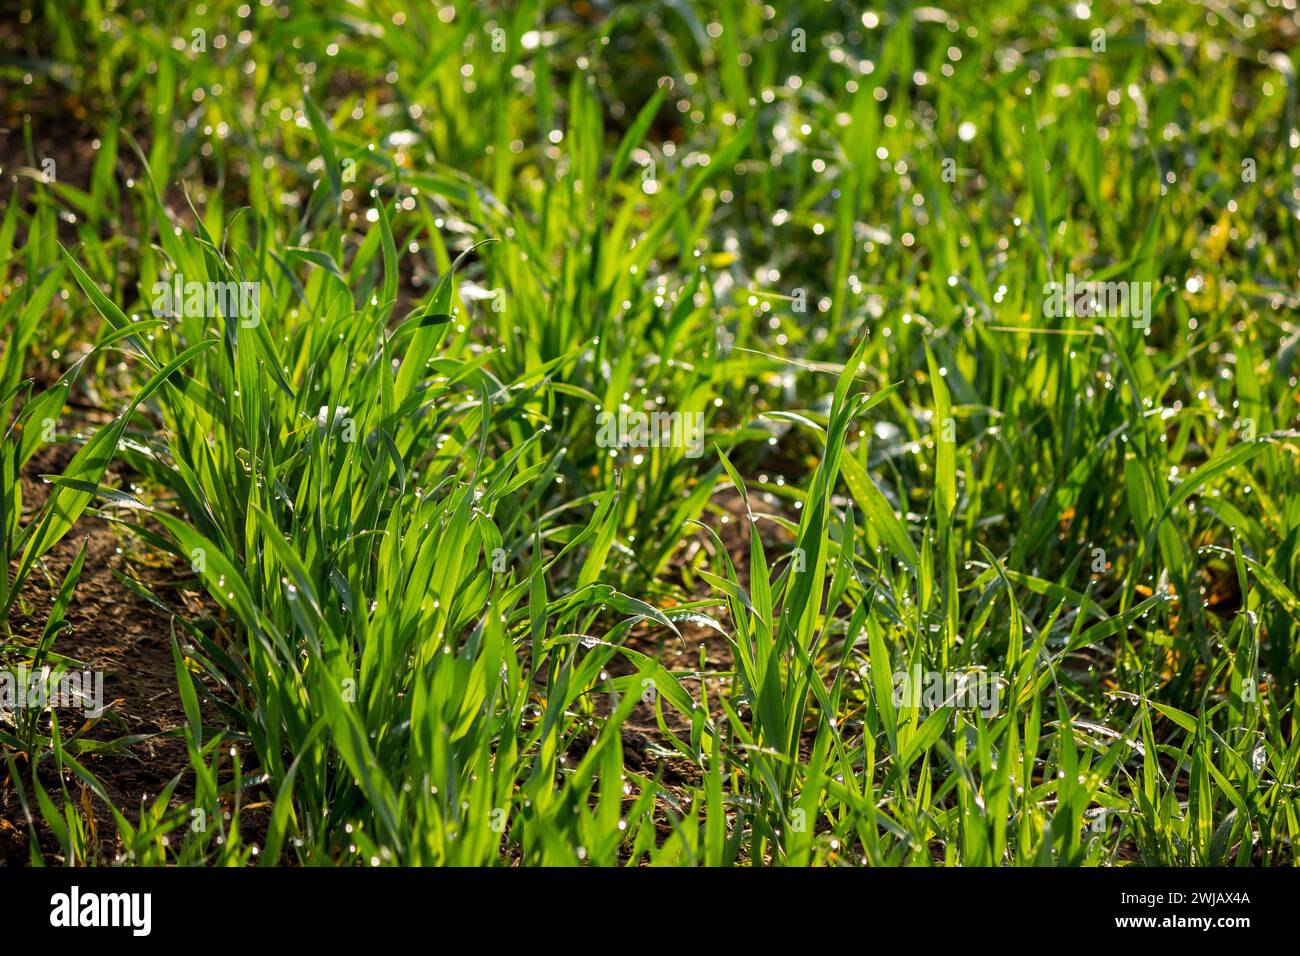 Jungweizenstämme im Morgentau. Saftiger natürlicher Hintergrund aus grünem Gras. Winterkulturen auf einem landwirtschaftlichen Feld Stockfoto